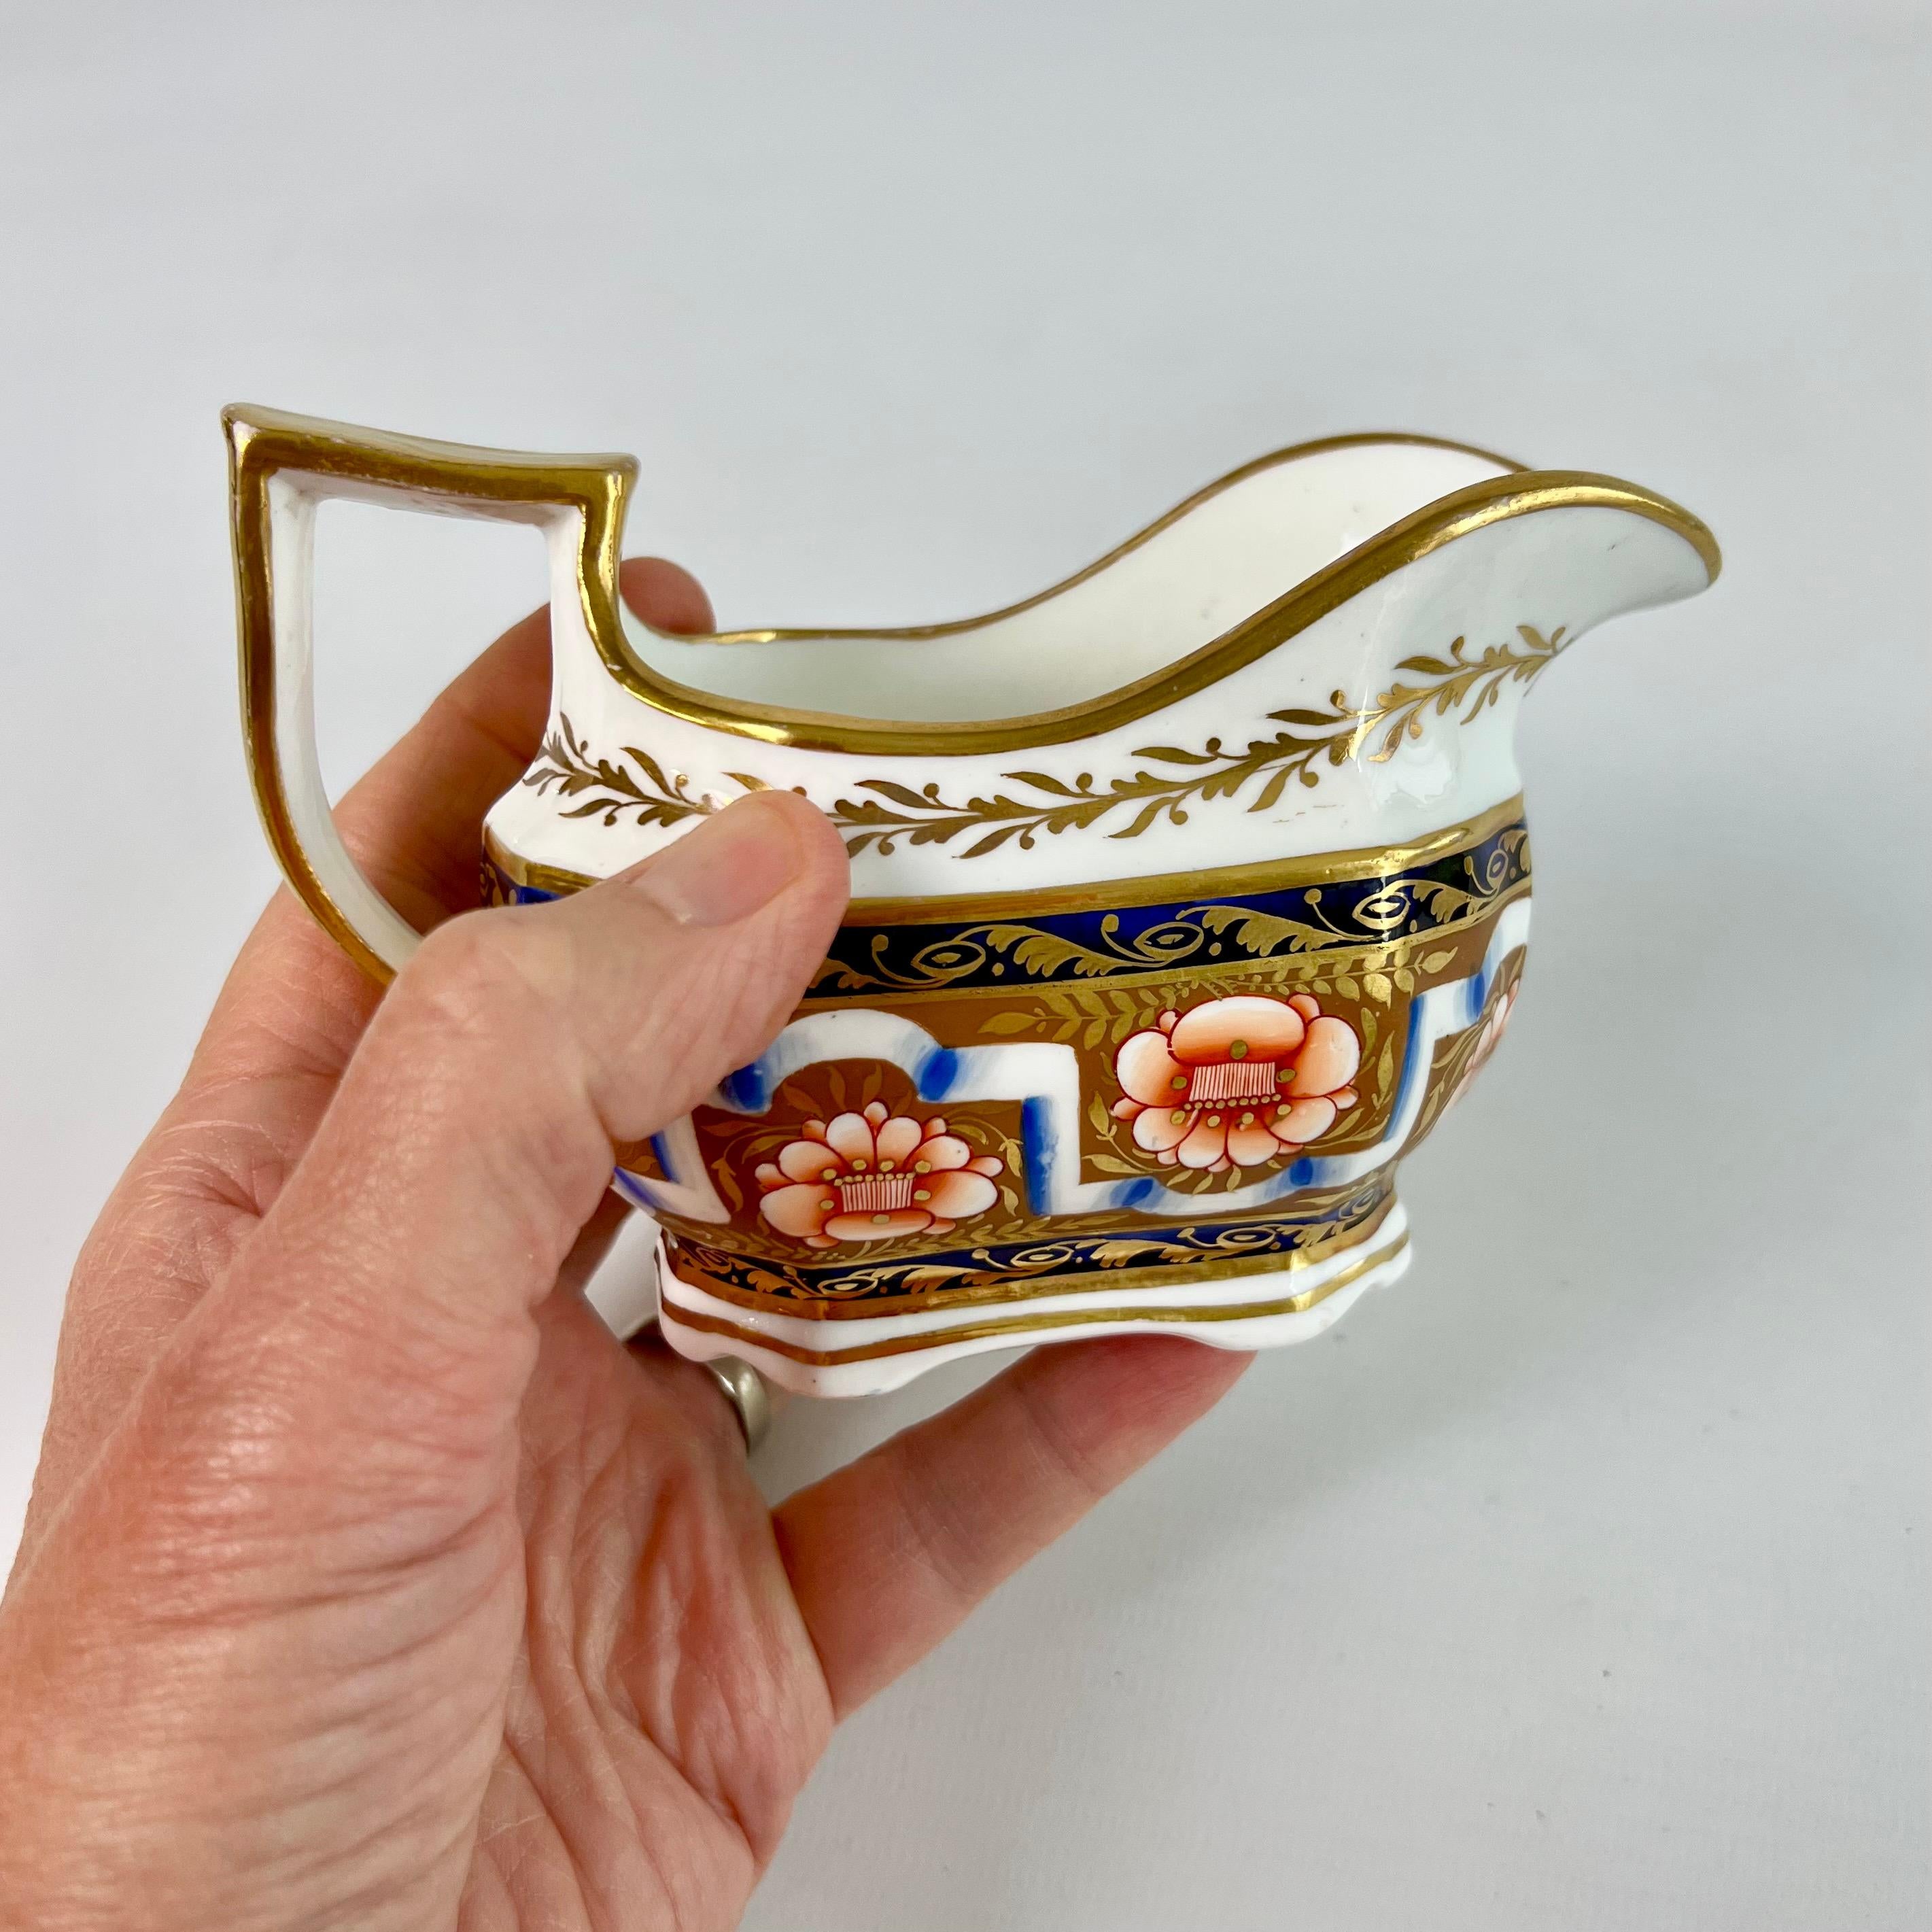 Dies ist ein schönes Milchkännchen von Spode aus der Zeit um 1825. Der Krug ist mit einem schönen neoklassizistischen Muster in Imari-Farben verziert und hat einen charakteristischen Schlangenhenkel. Es stammt aus der berühmten Solomon Andrews